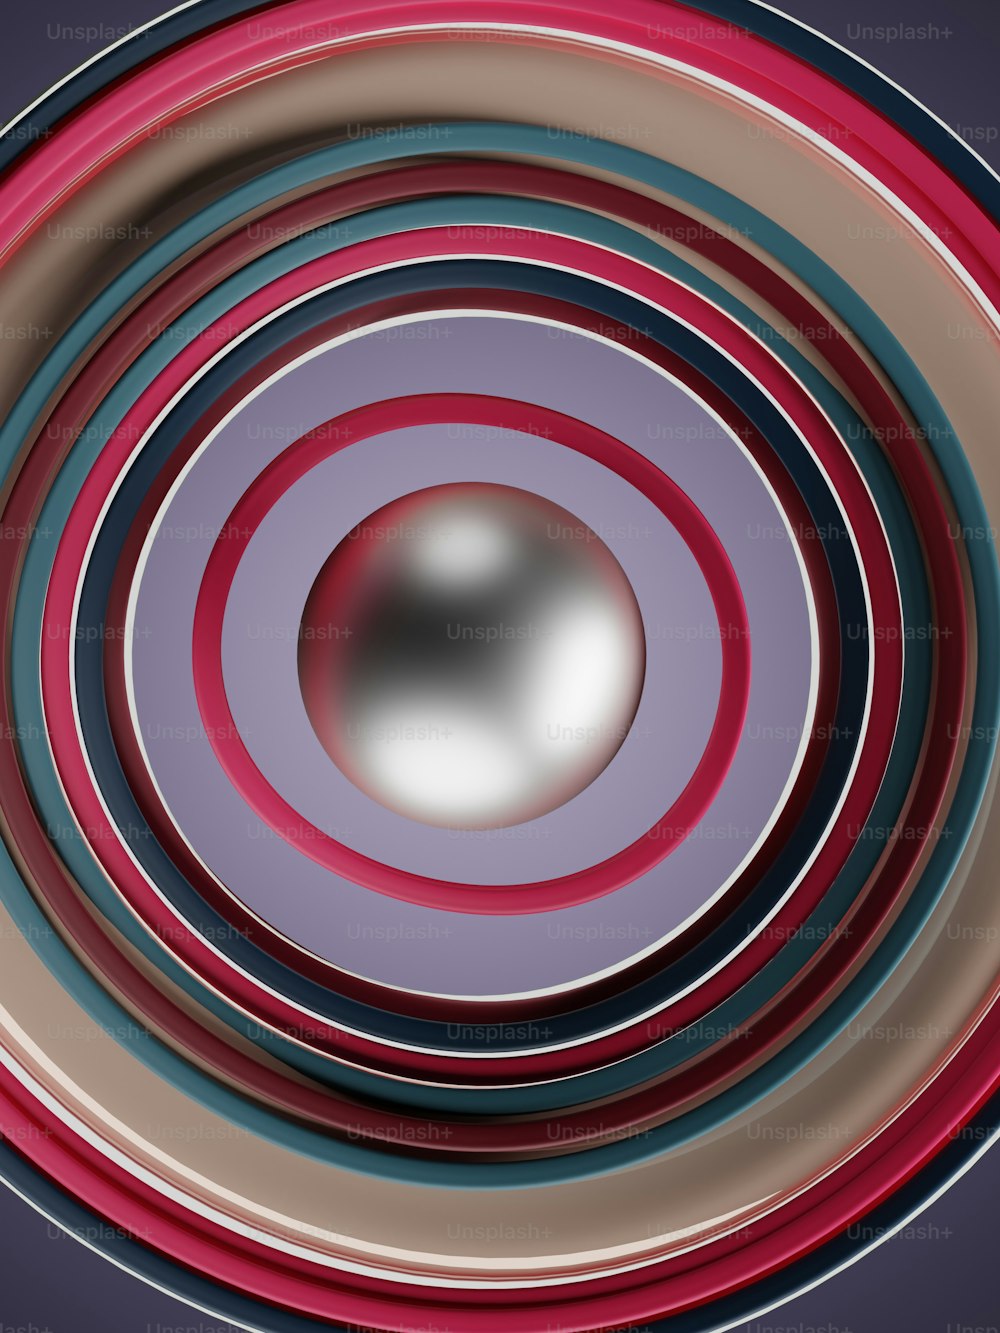 uma imagem de um objeto circular com um fundo desfocado